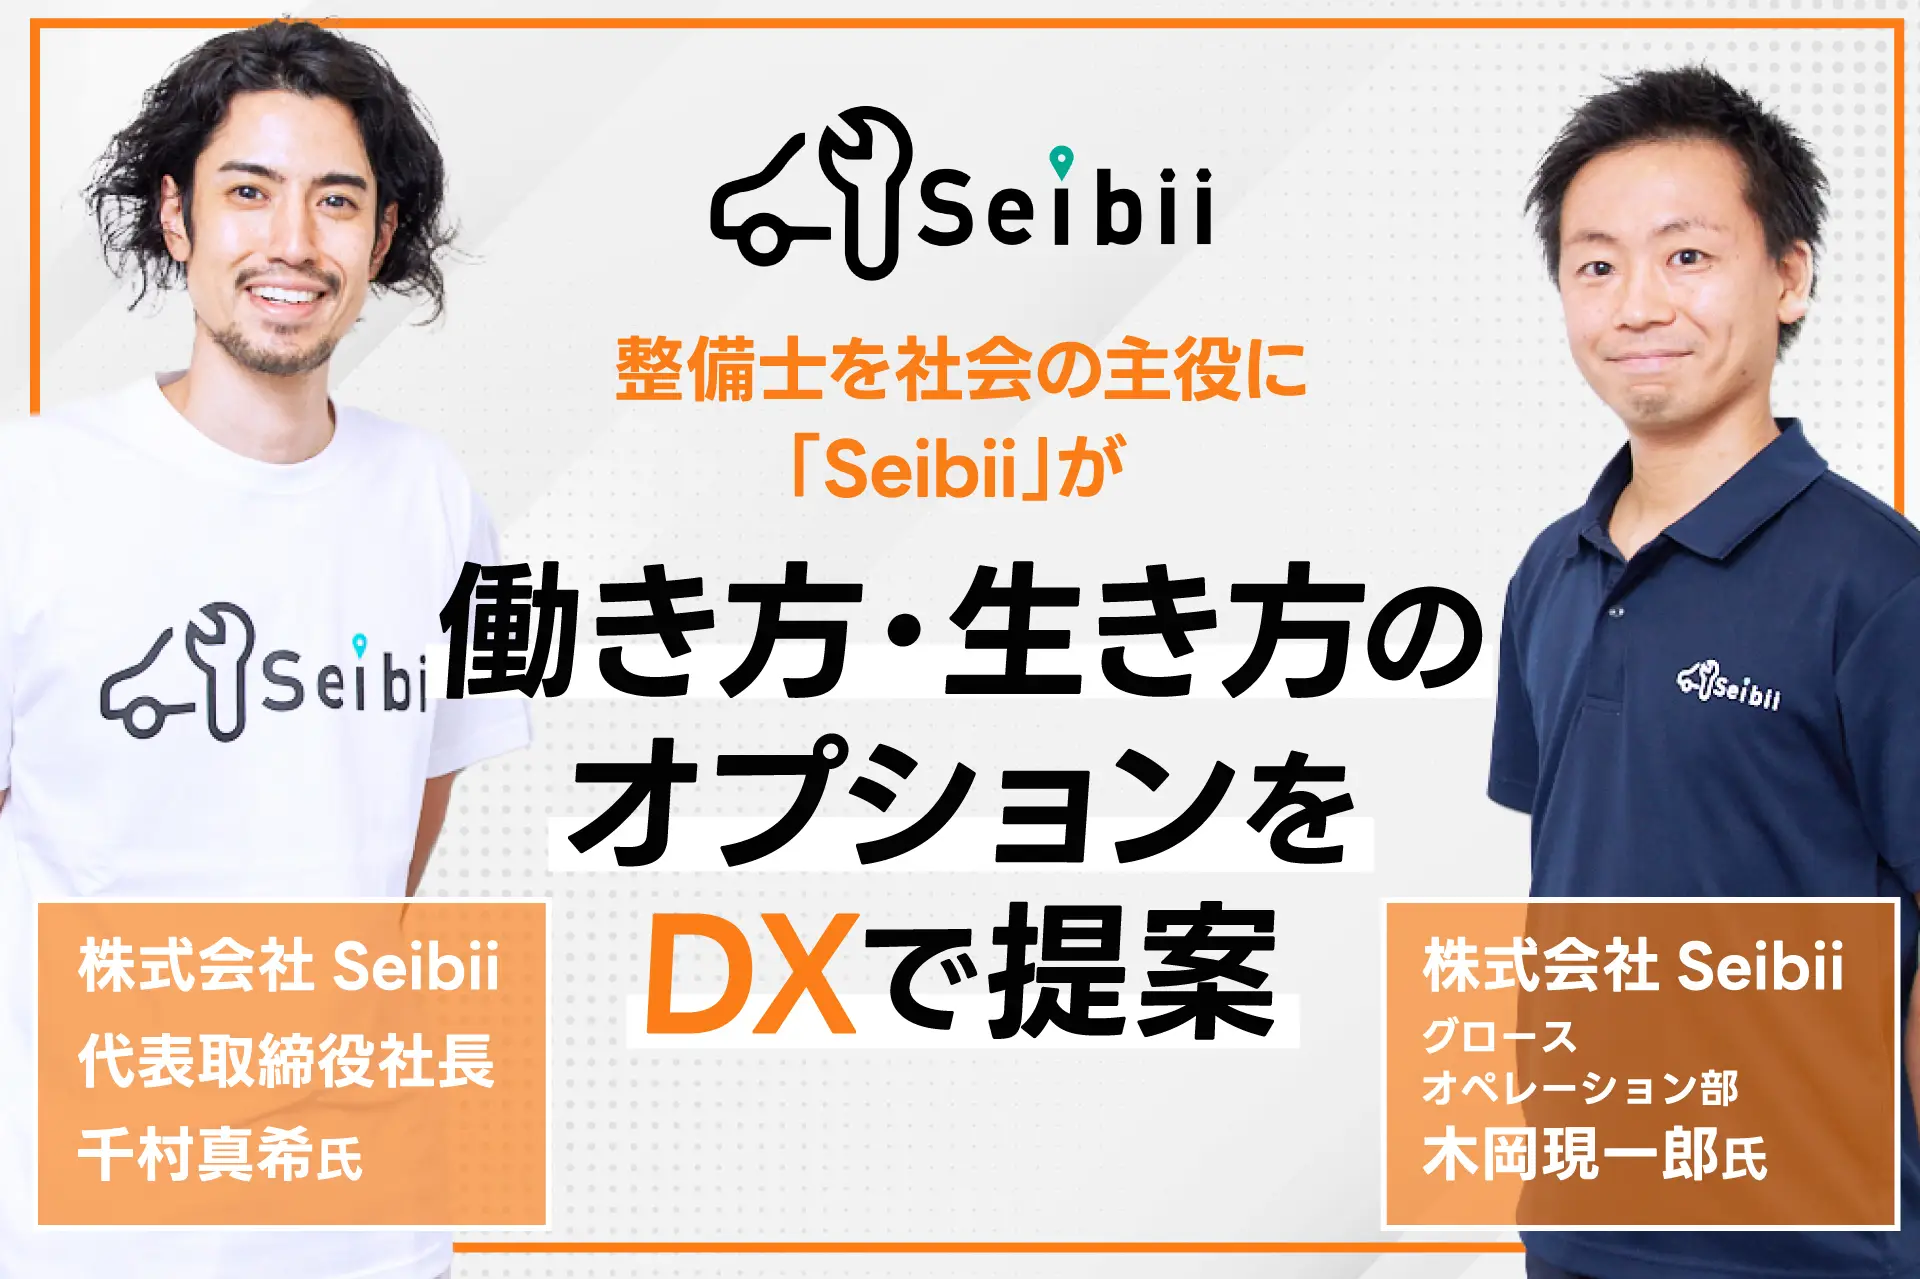 “整備士を社会の主役に”　「Seibii」が働き方・生き方のオプションをDXで提案